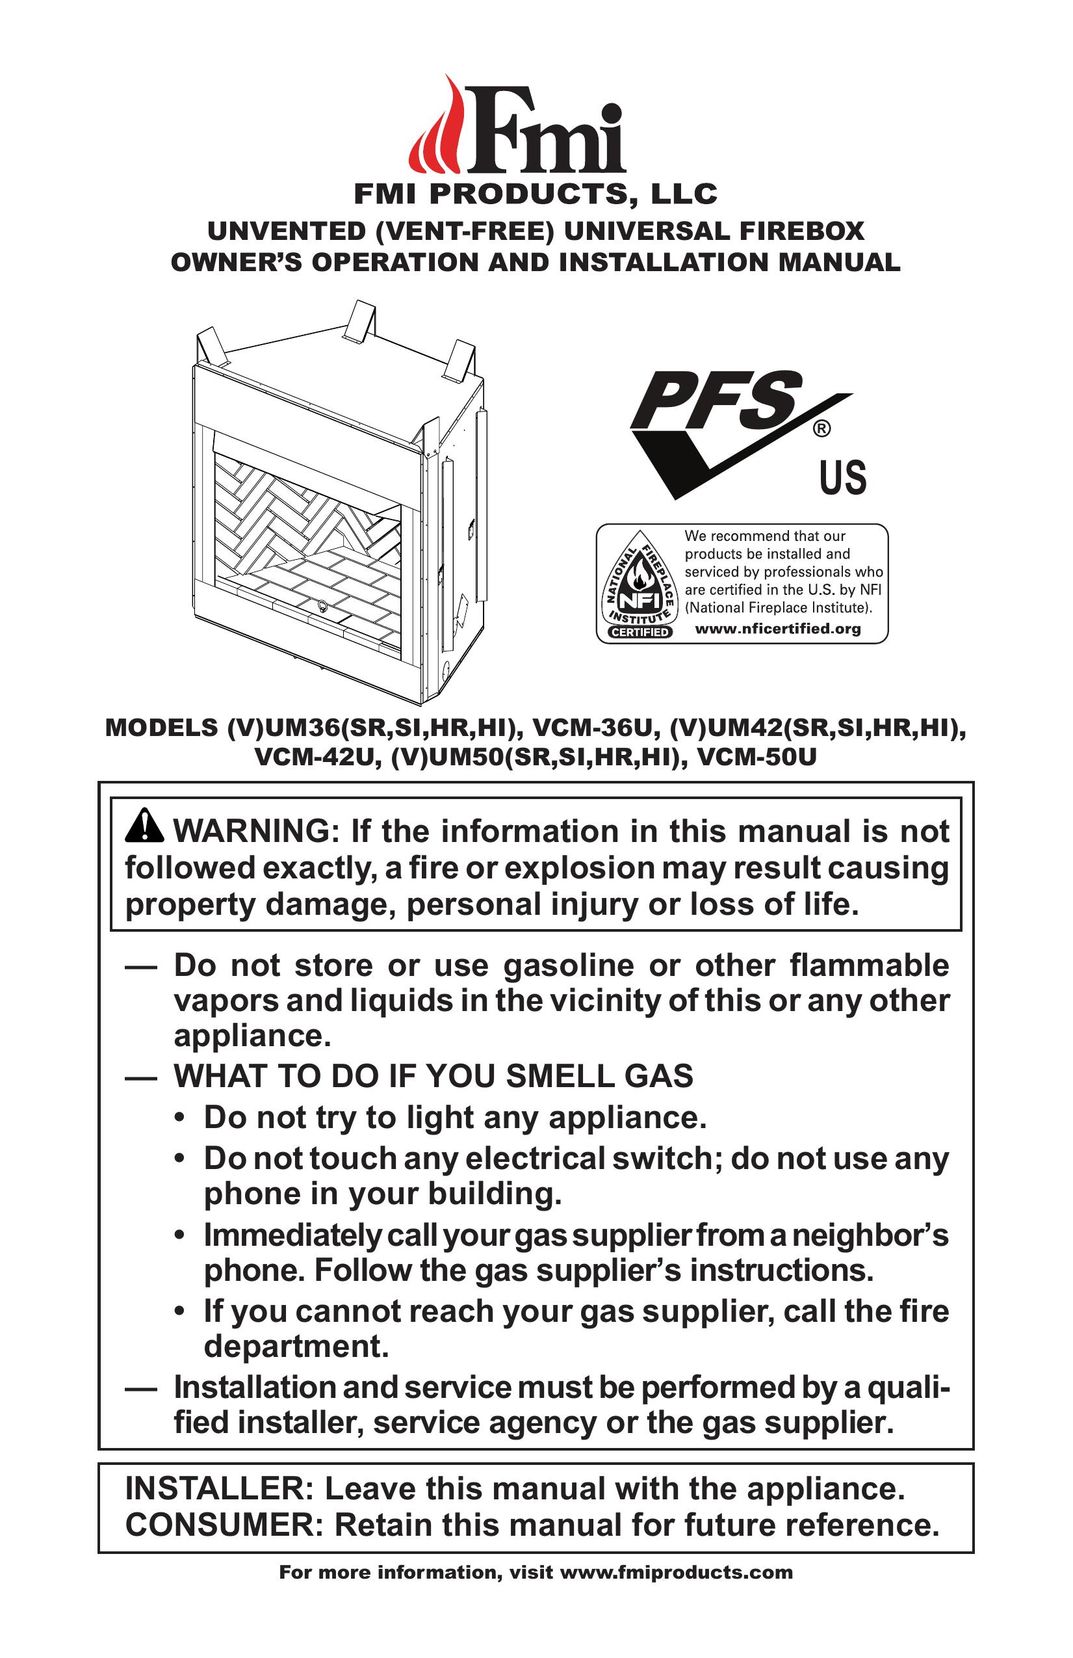 FMI (V)UM36(SR,SI,HR,HI) Indoor Fireplace User Manual